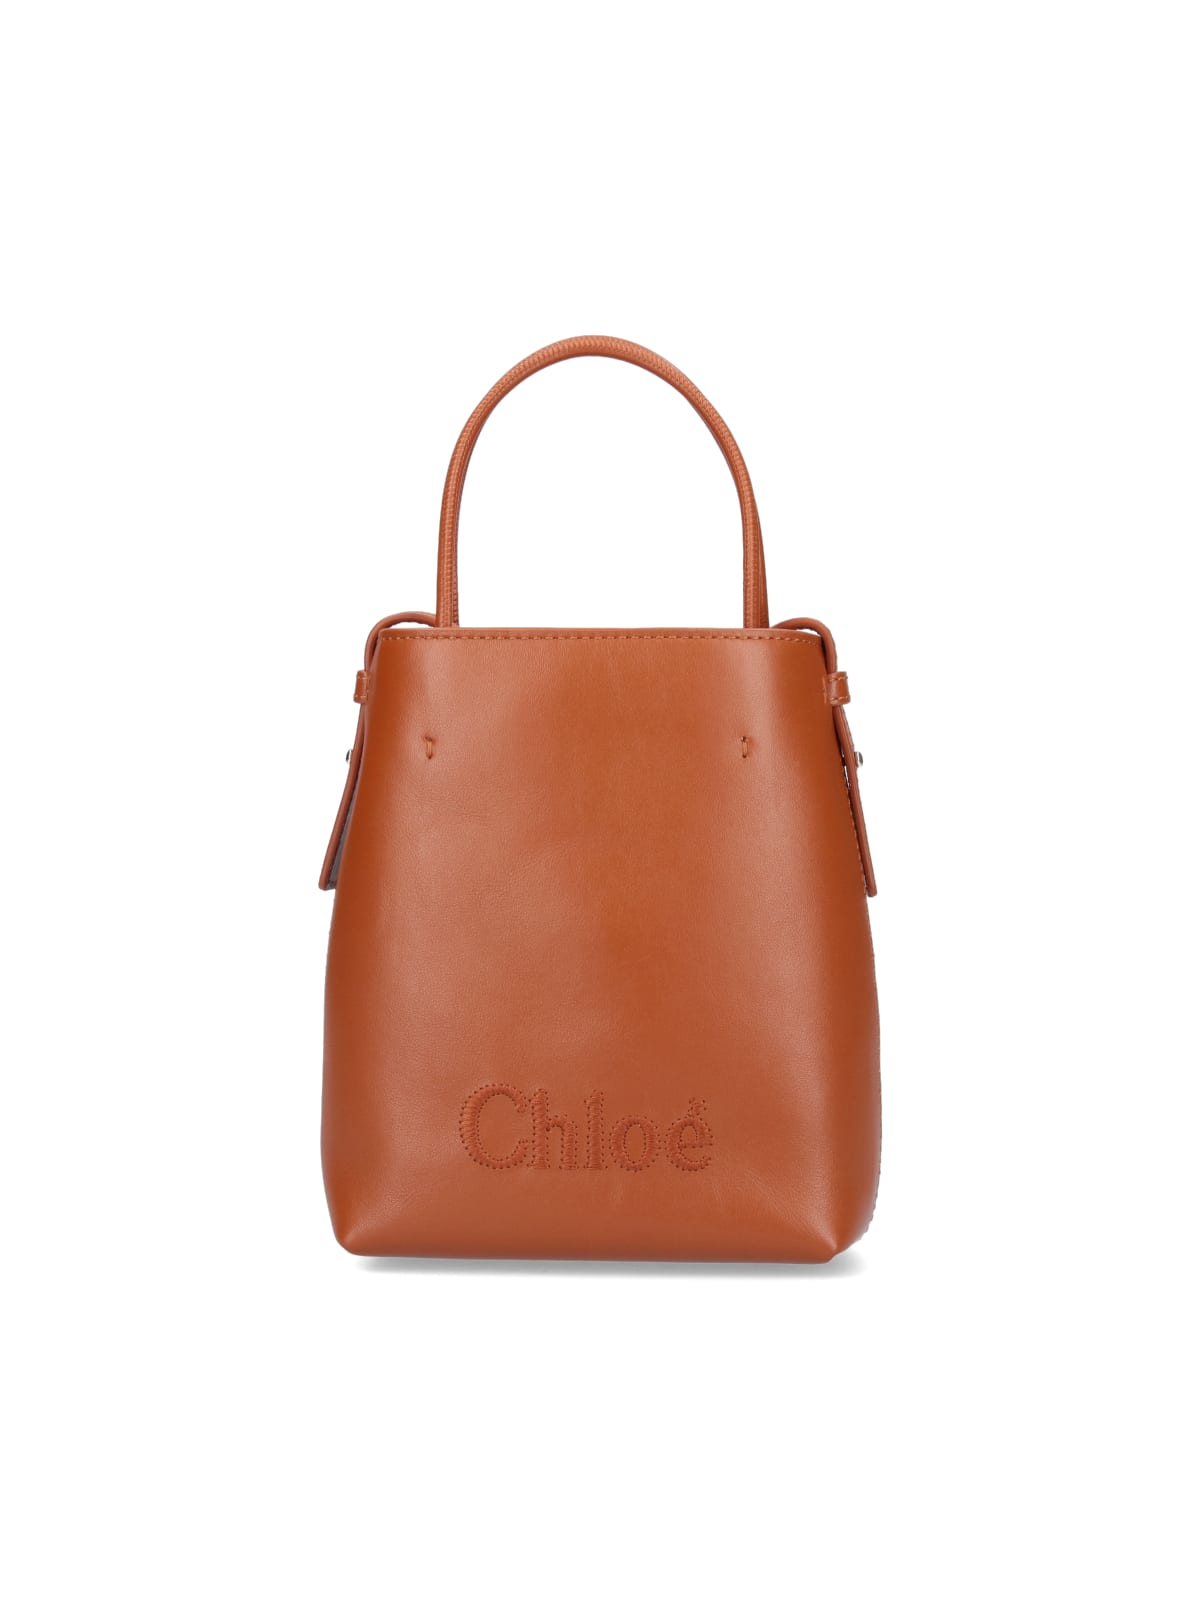 Chloé sense Micro Bag